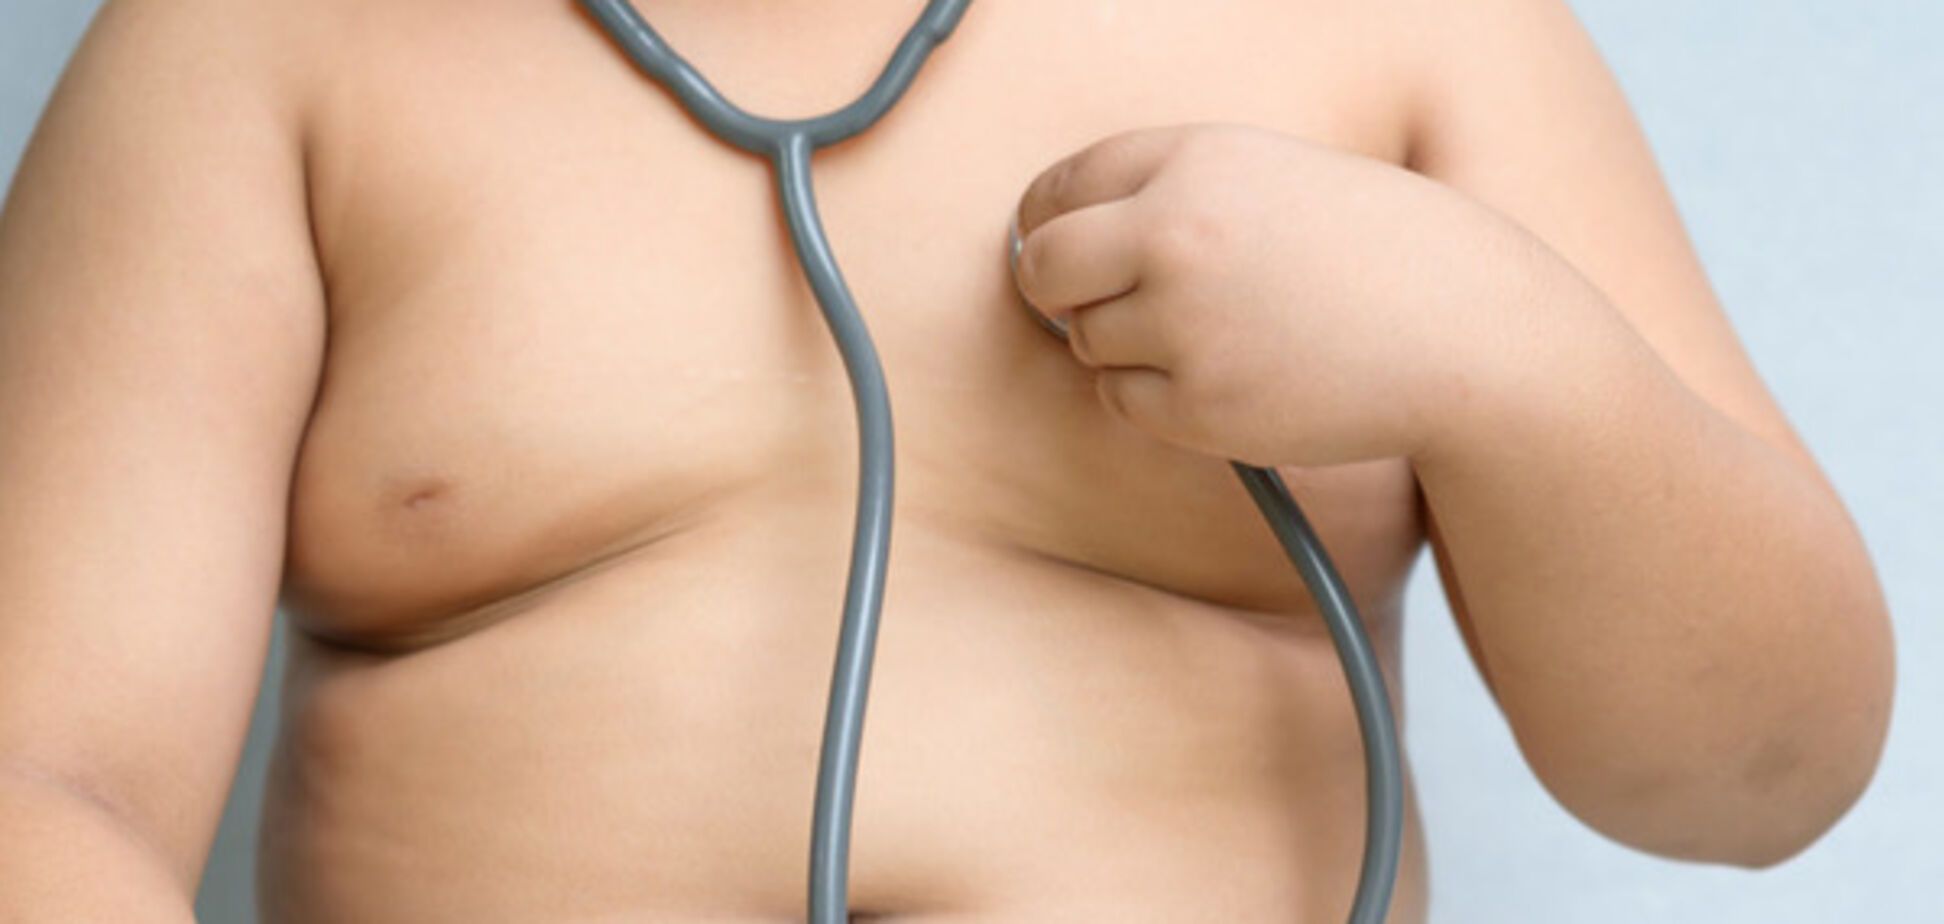 Вчені пояснили, як ожиріння в дитинстві впливає на здоров'я в майбутньому